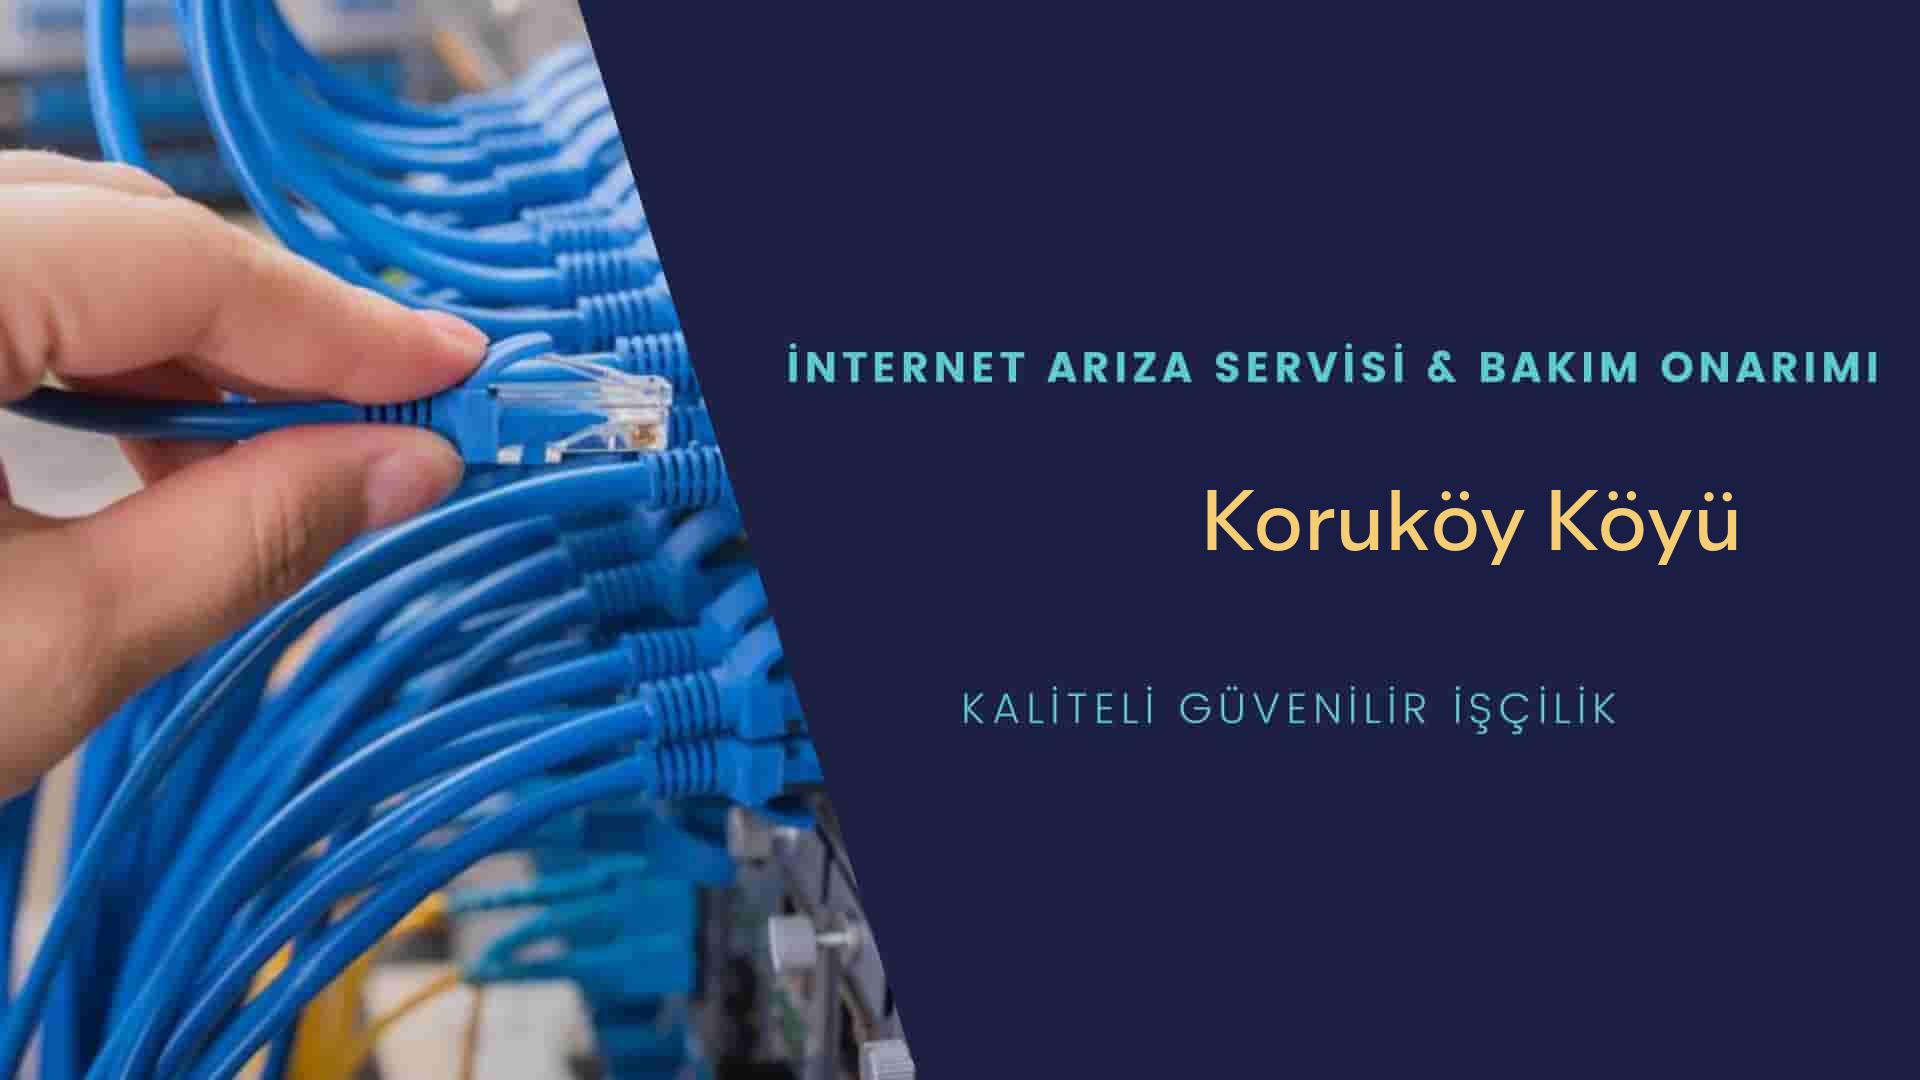 Koruköy Köyü internet kablosu çekimi yapan yerler veya elektrikçiler mi? arıyorsunuz doğru yerdesiniz o zaman sizlere 7/24 yardımcı olacak profesyonel ustalarımız bir telefon kadar yakındır size.